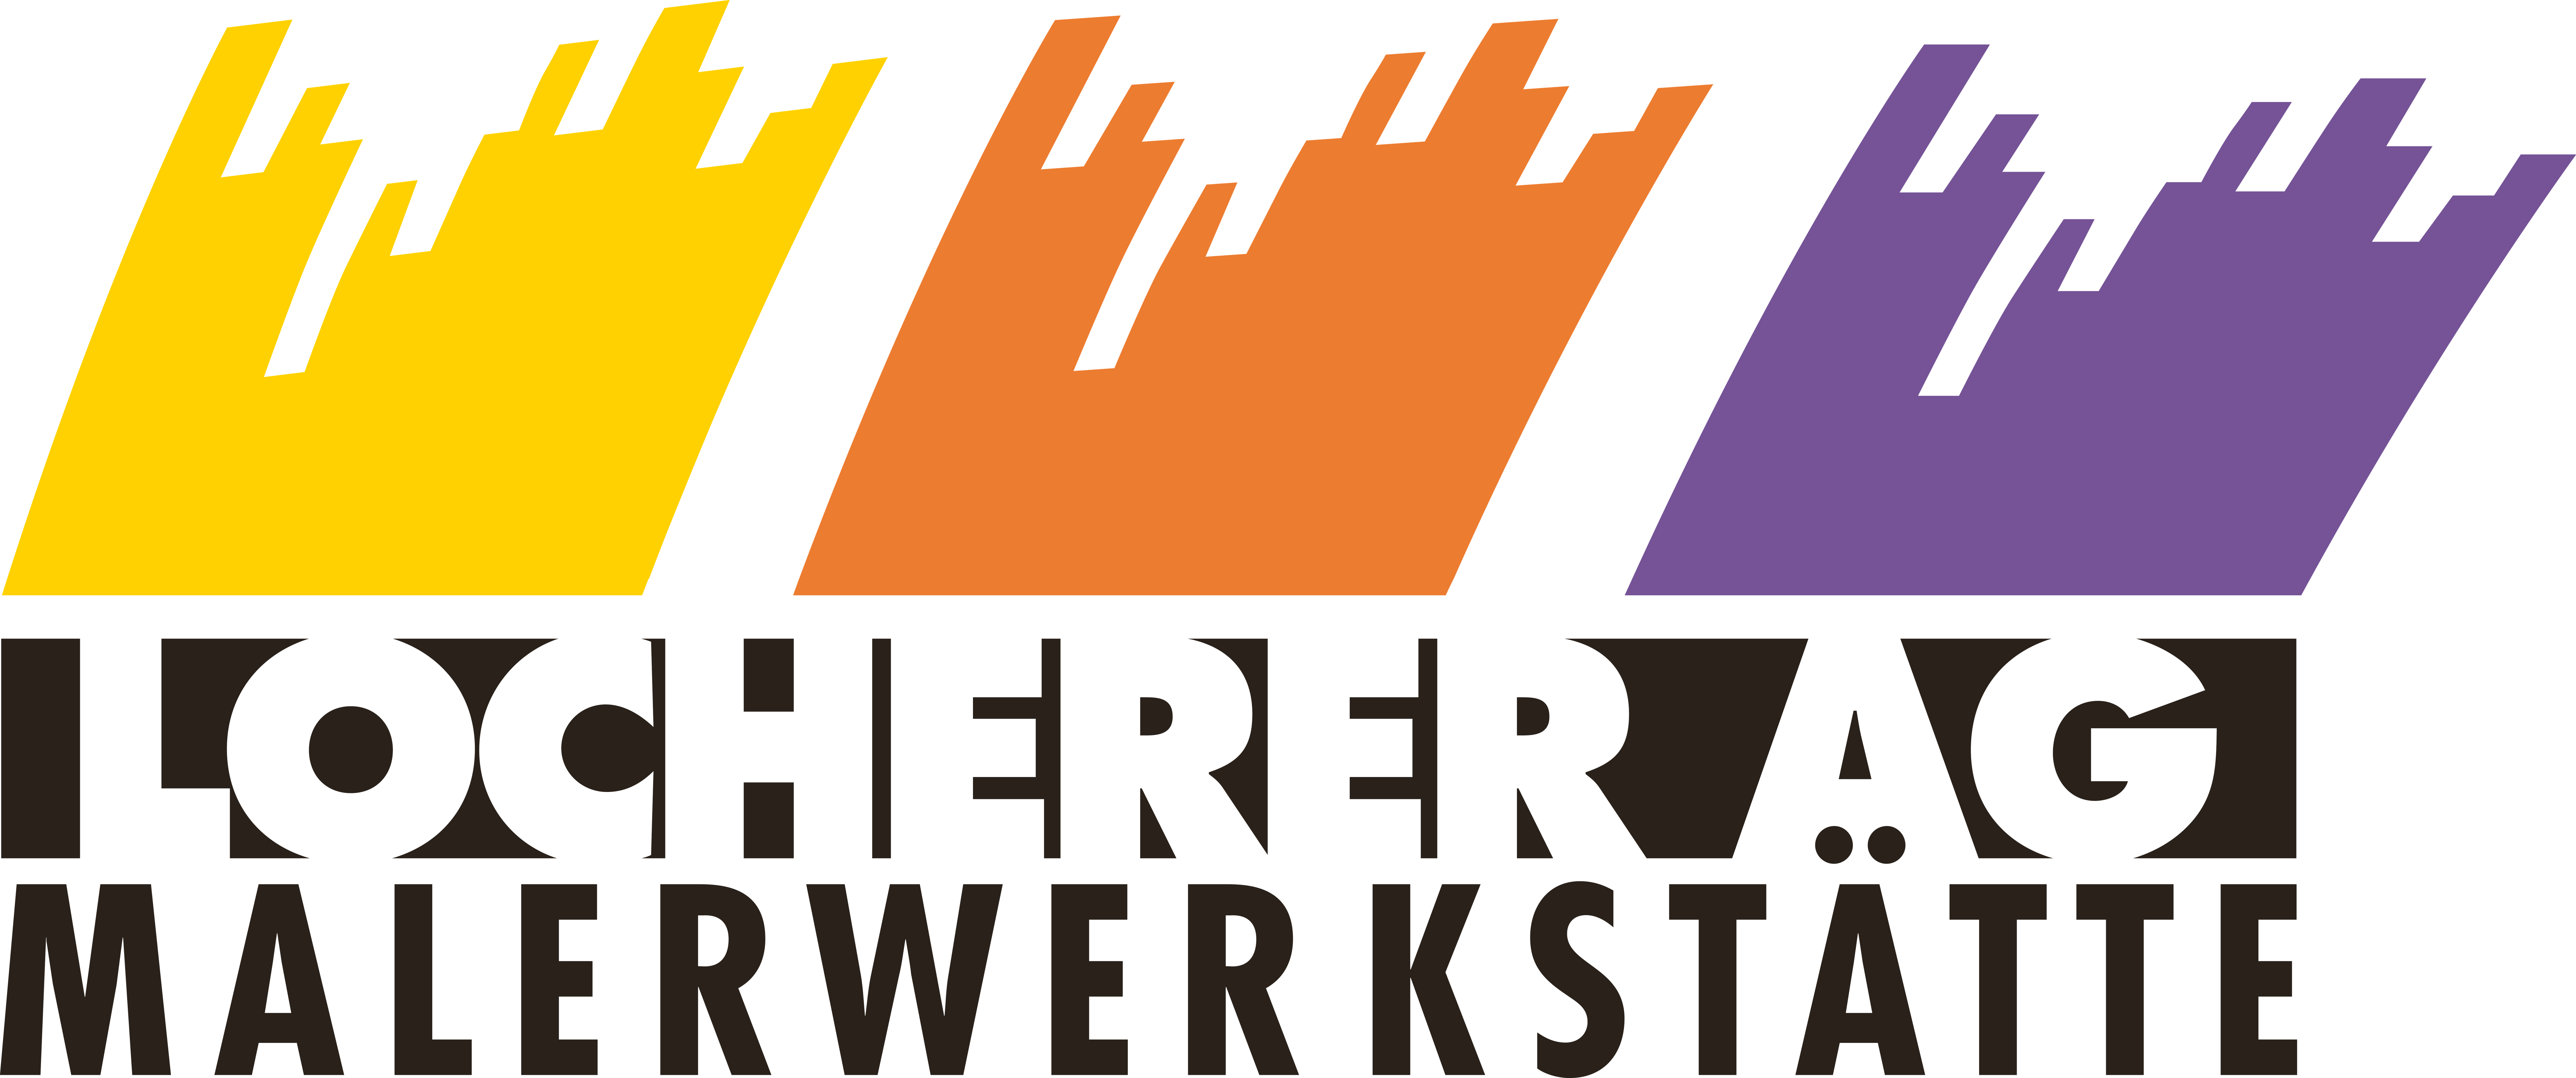 Locherer_Maler_Logo